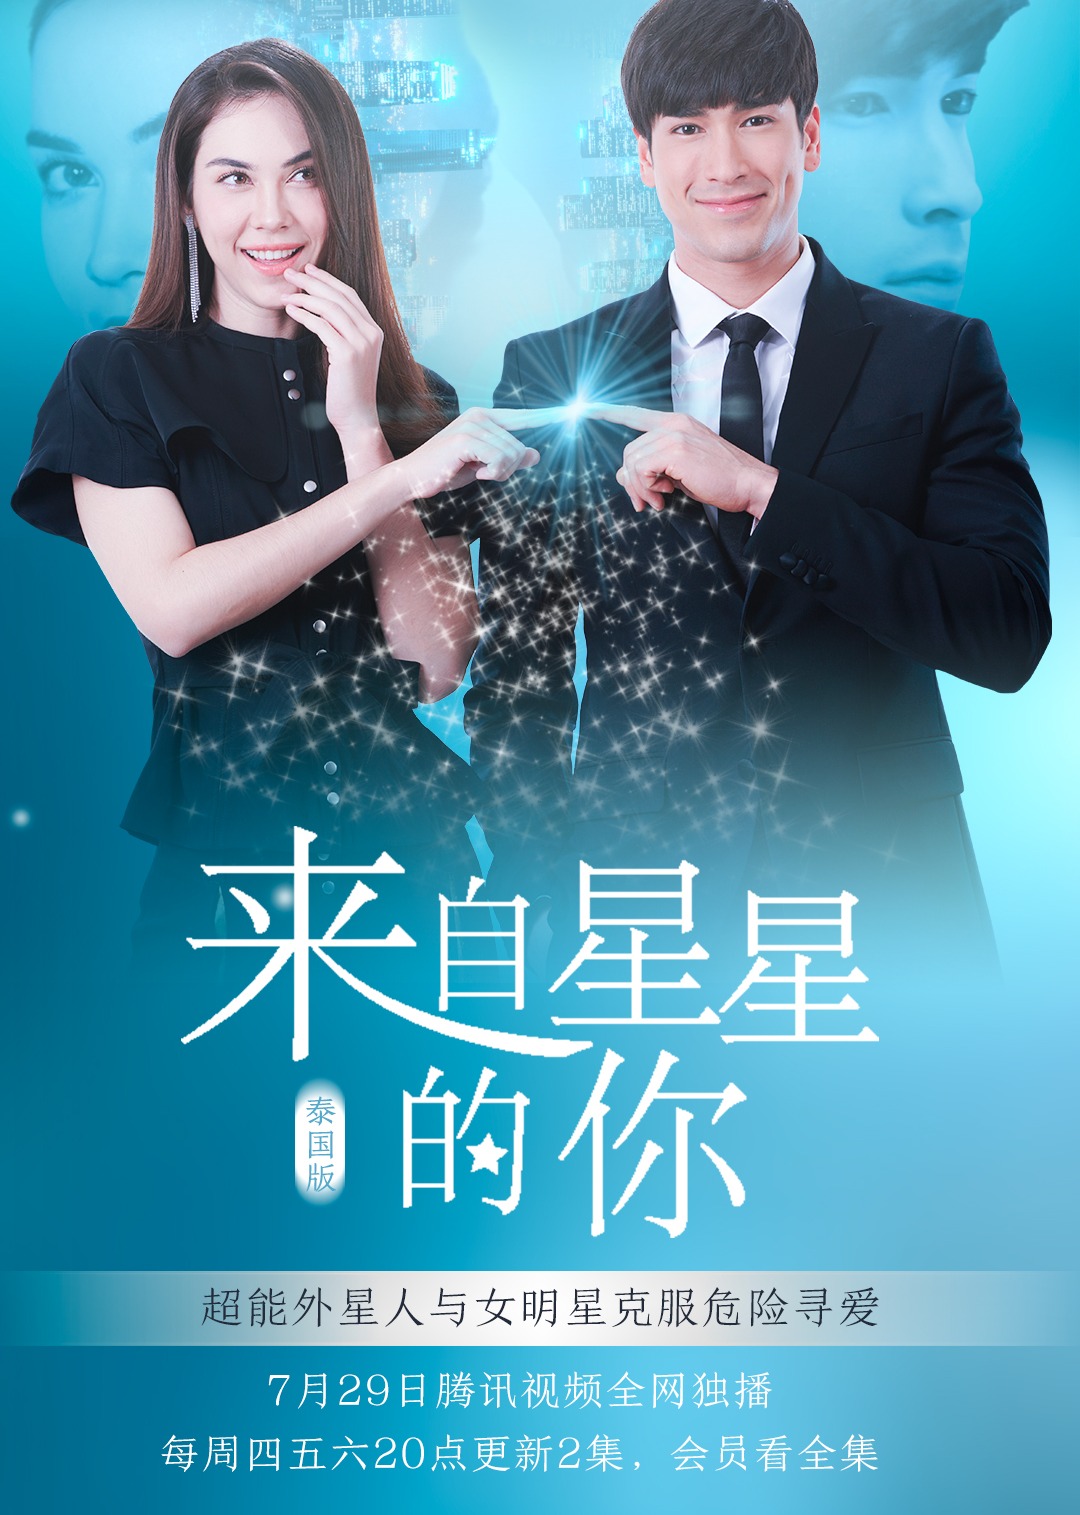 黄家强2013演唱会电影封面图